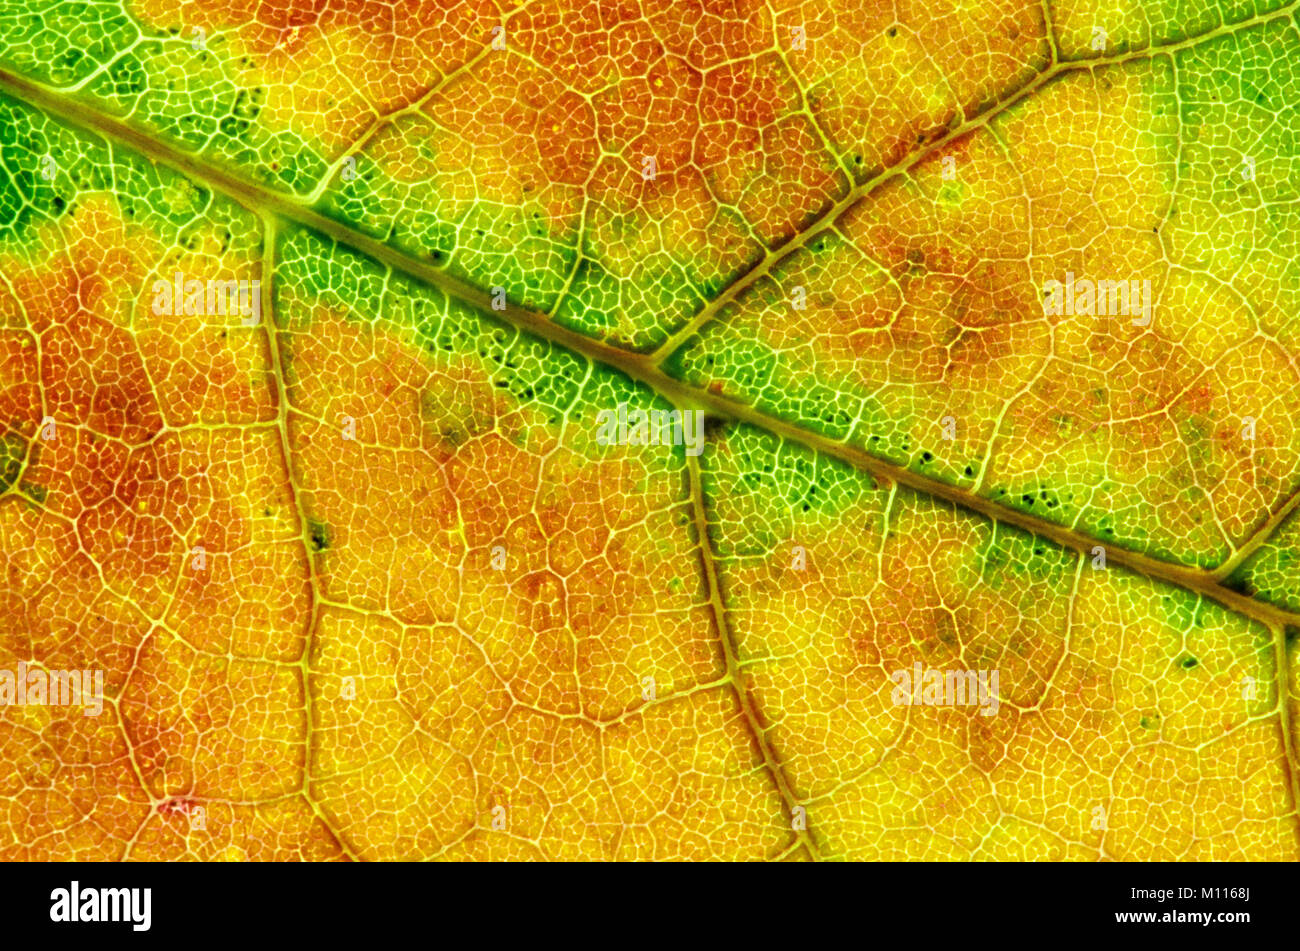 Maple, leaf detail in autumn / (Acer spec.) | Ahorn, Blattdetail im Herbst / (Acer spec.) Stock Photo